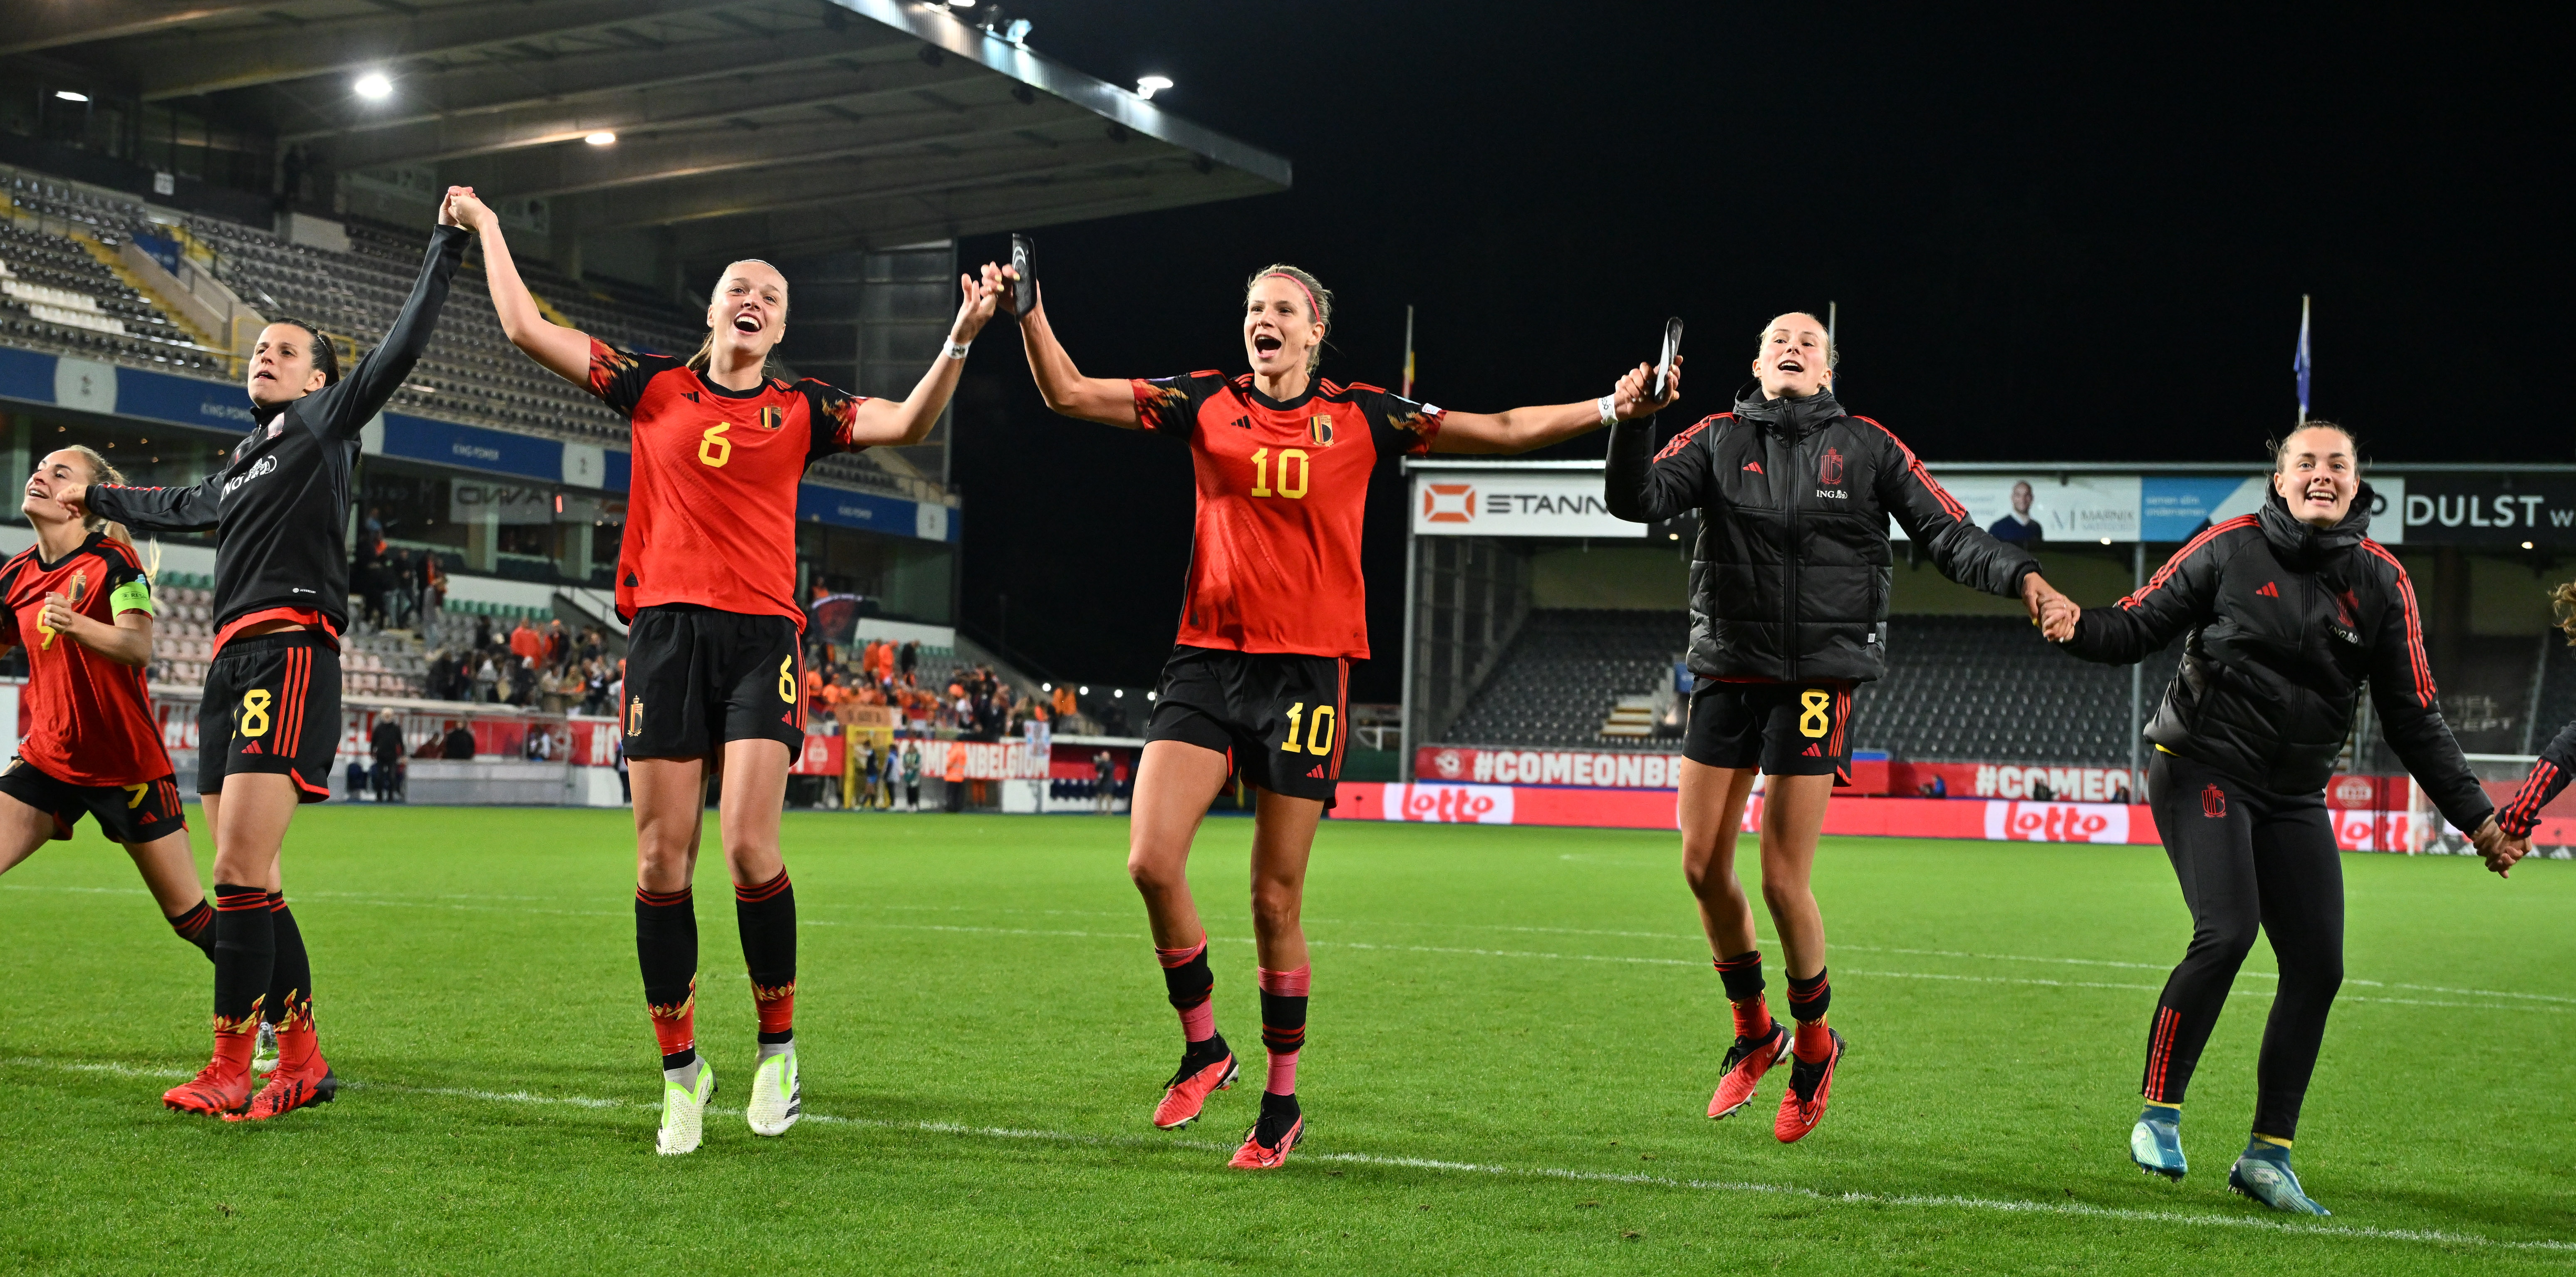 Coupe de Belgique : Anderlecht se qualifie face au Standard dans un Clasico  marqué par de nouveaux débordements en tribunes (VIDÉOS) - L'Avenir